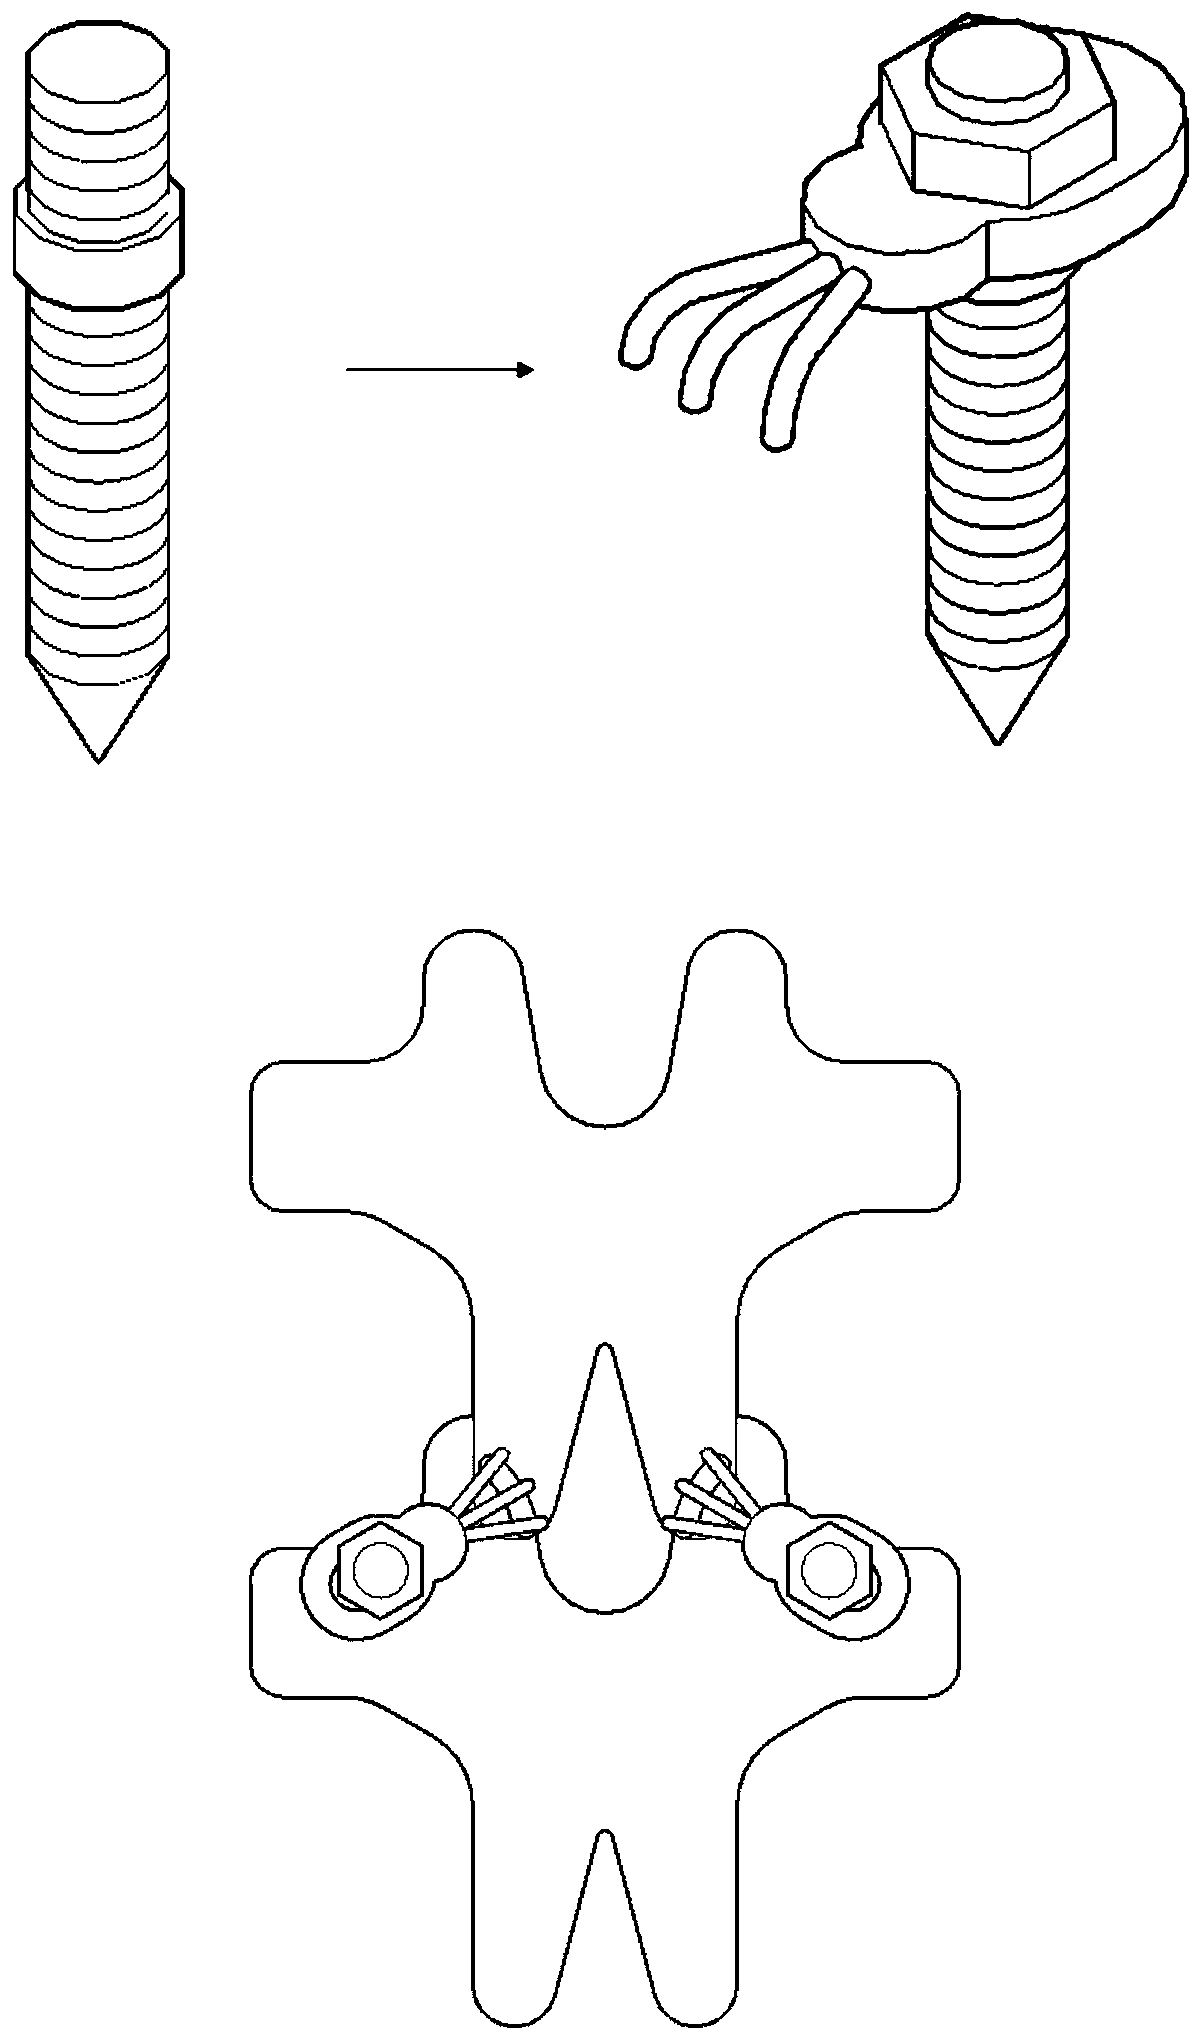 A lumbar facet joint tension band fixator